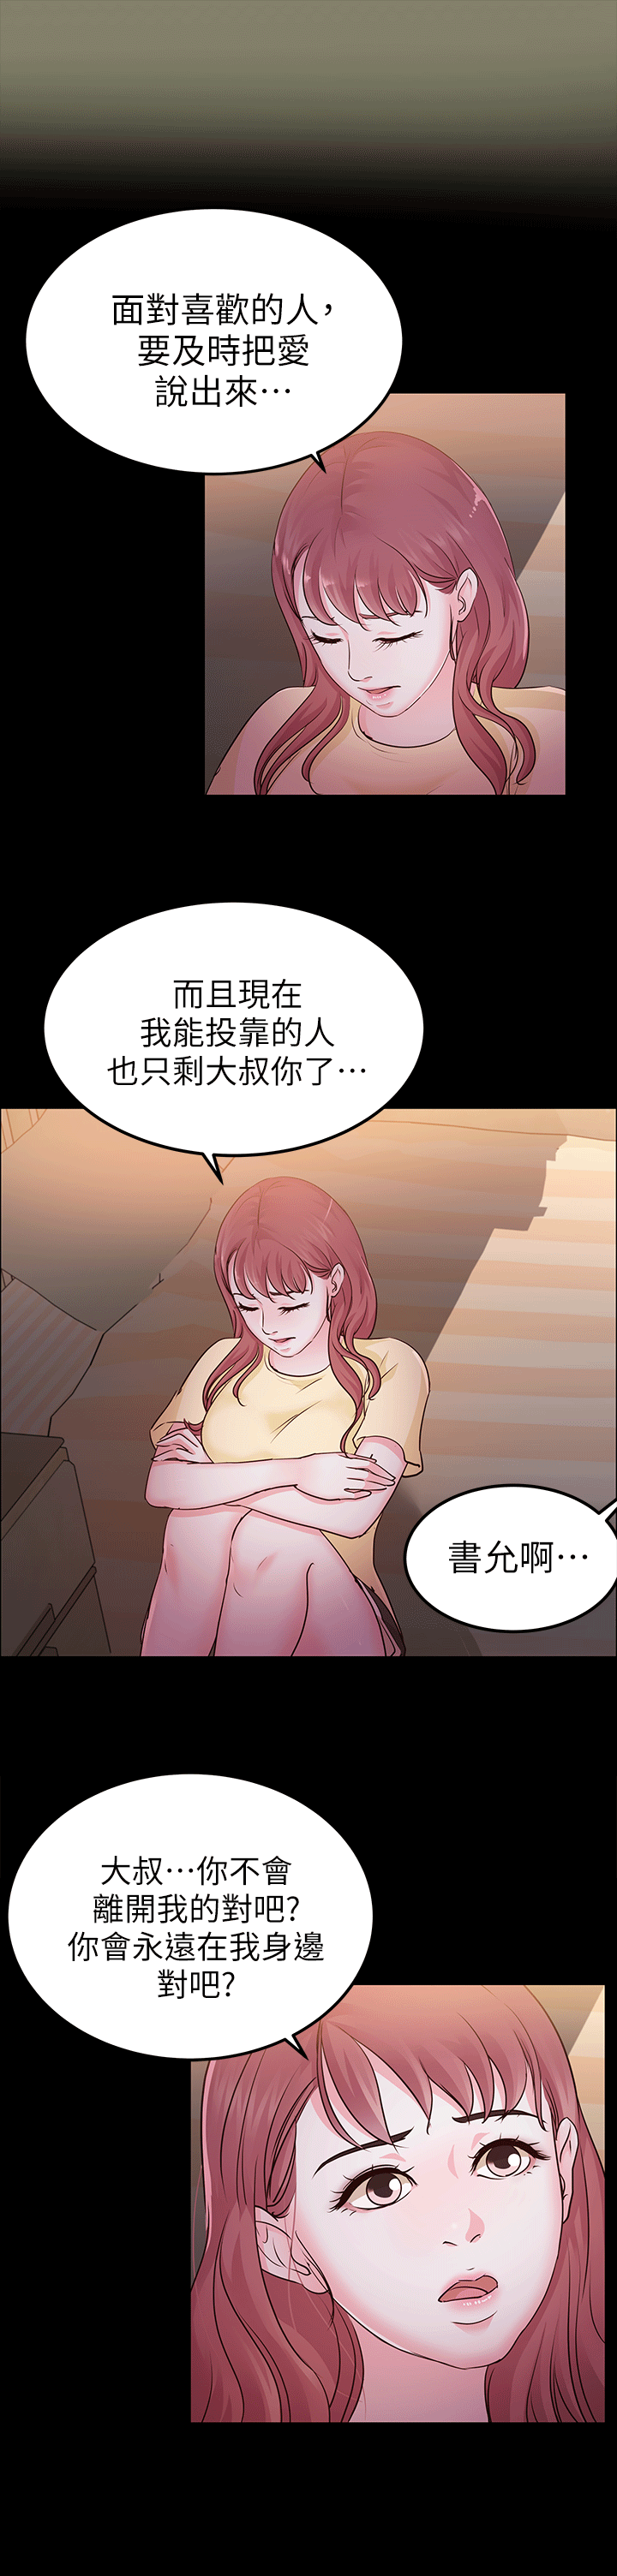 韩国污漫画 養女 第11话 15